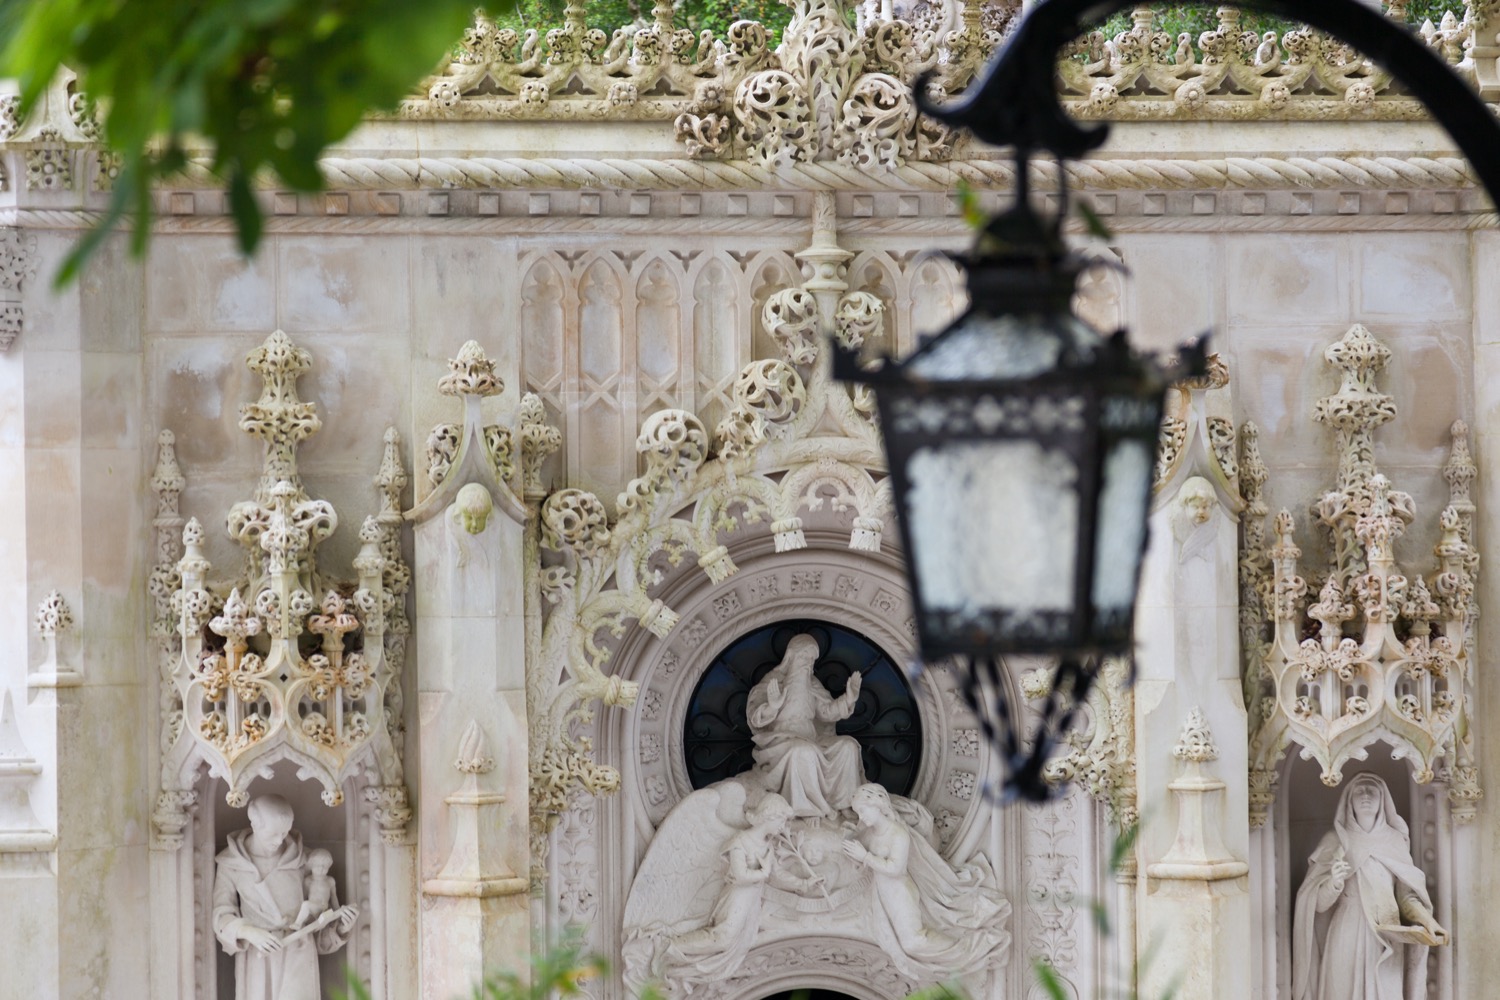 Arquitectura europea antigua quinta da regaleira palace en sintra lisboa portugal